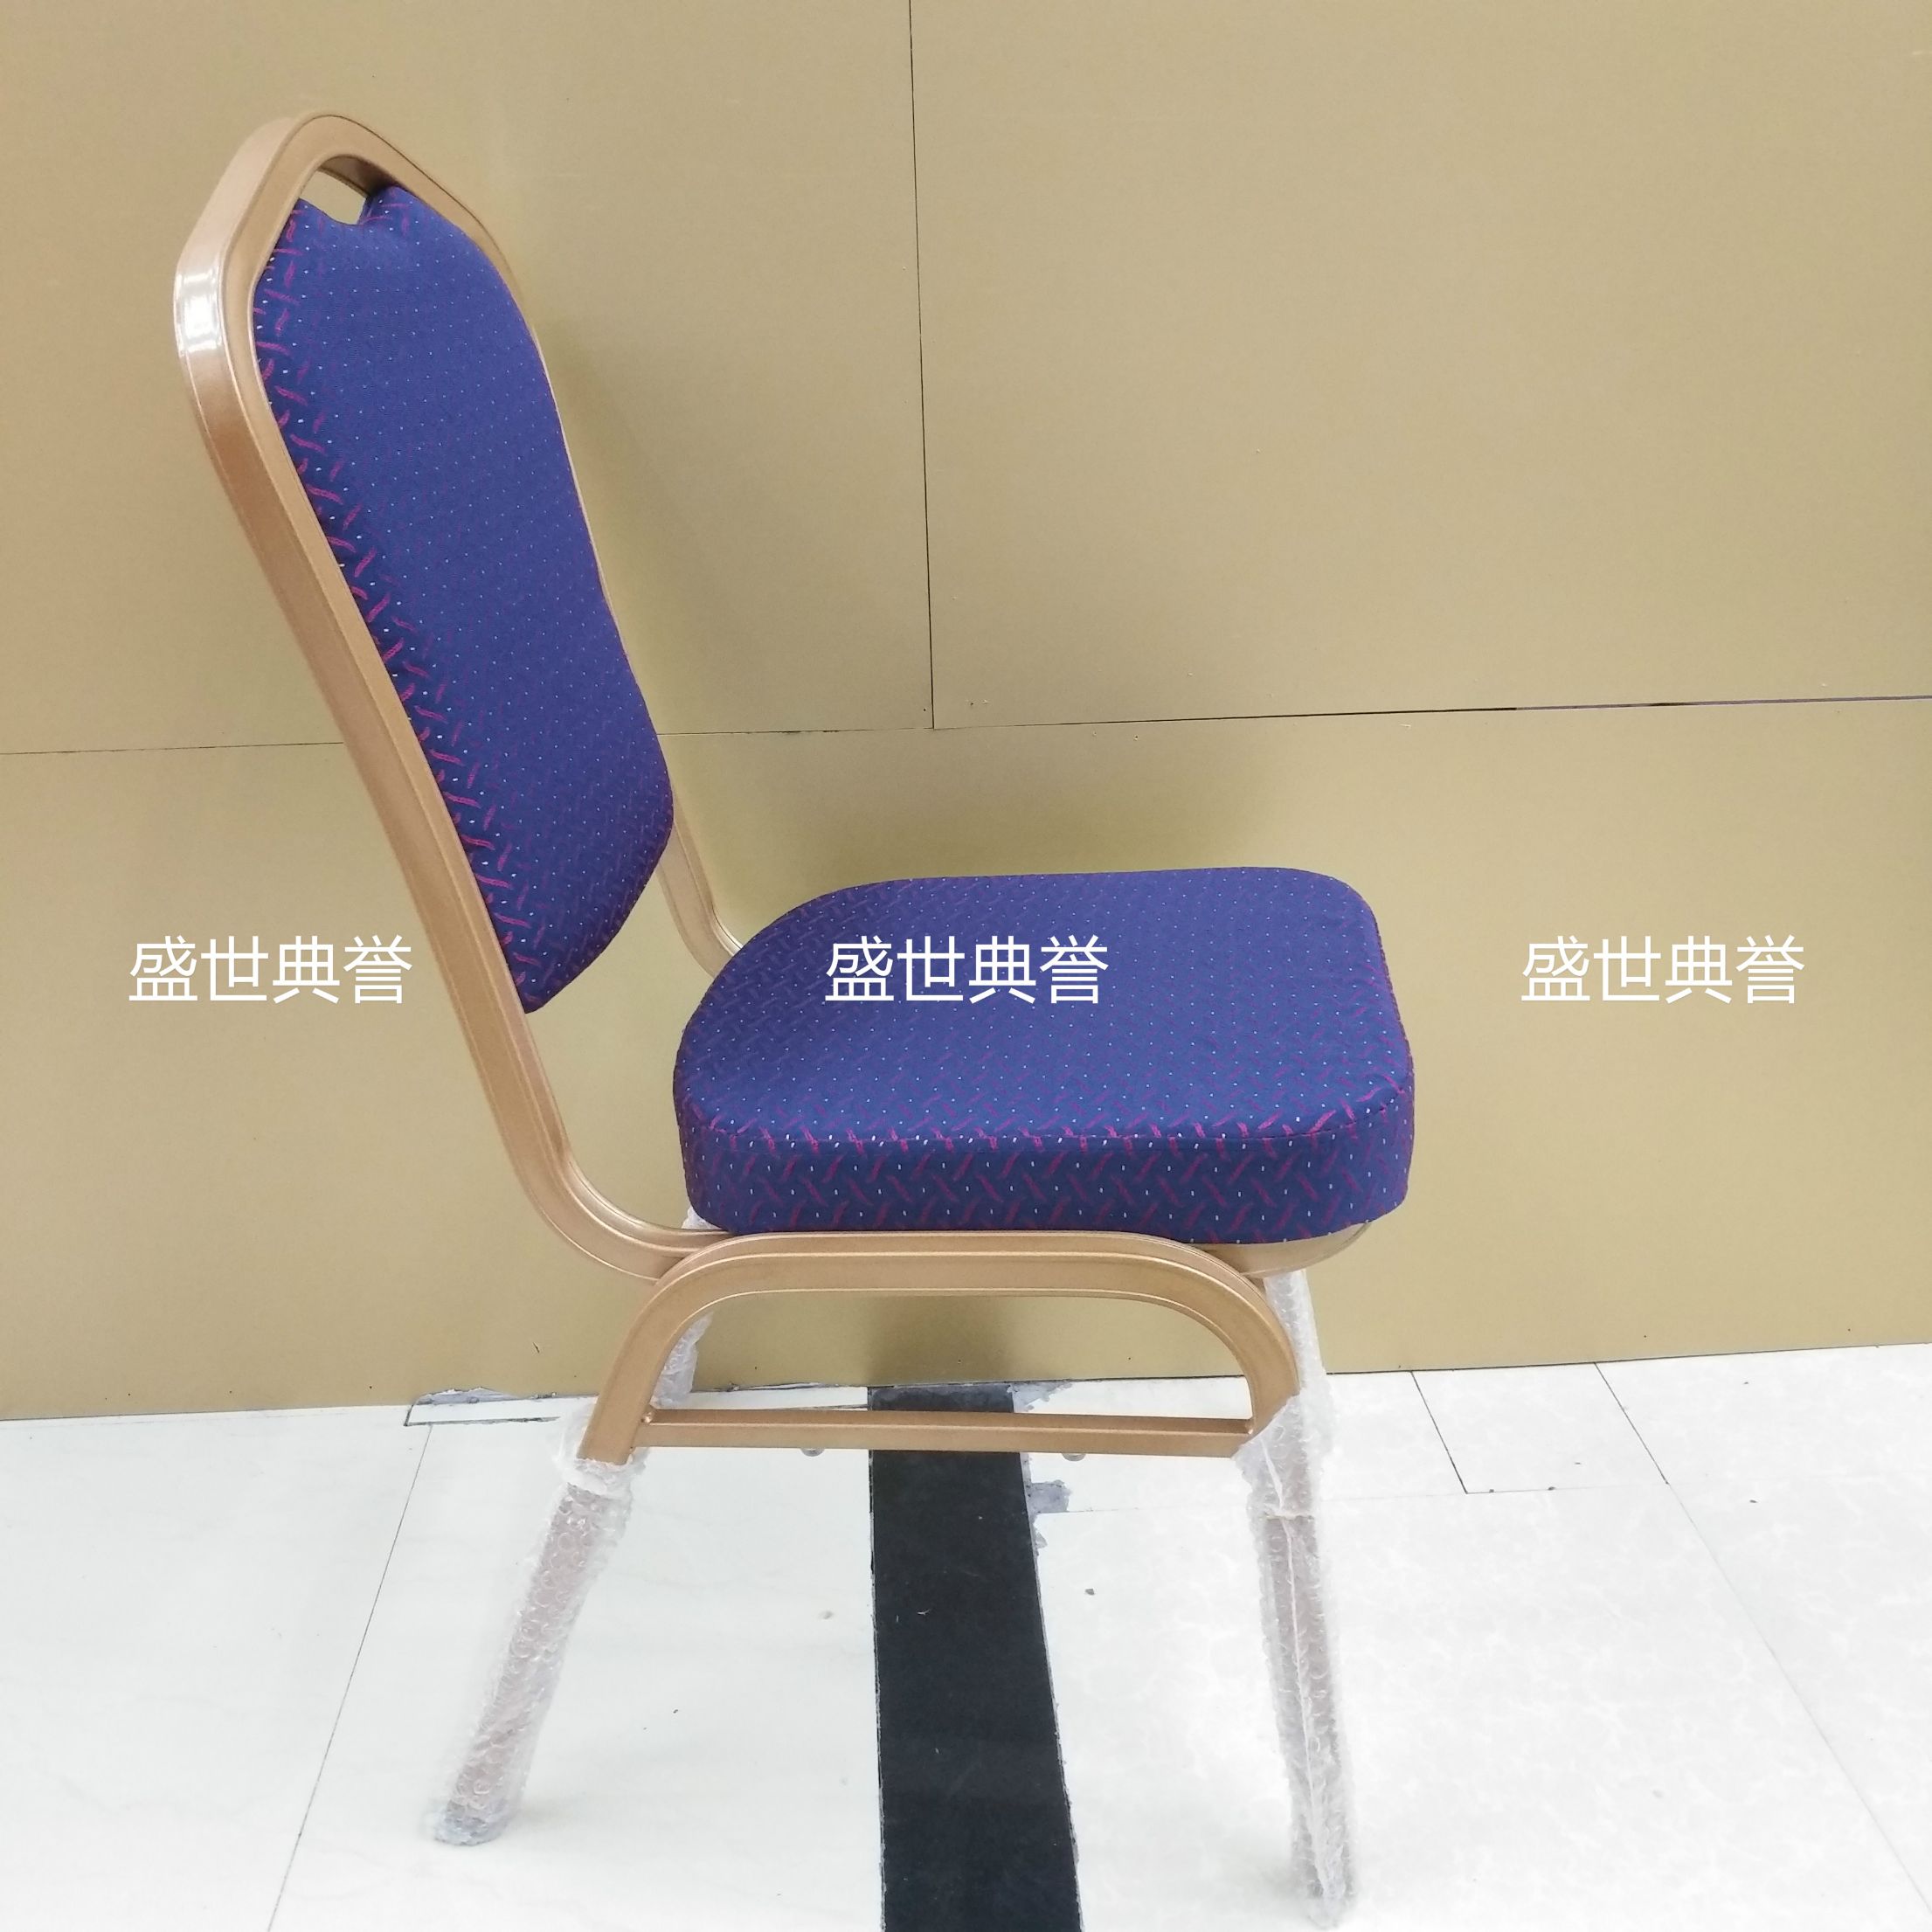 杭州度假酒店宴会家具定做会议中心铝合金椅子饭店婚宴会议桌椅细节图